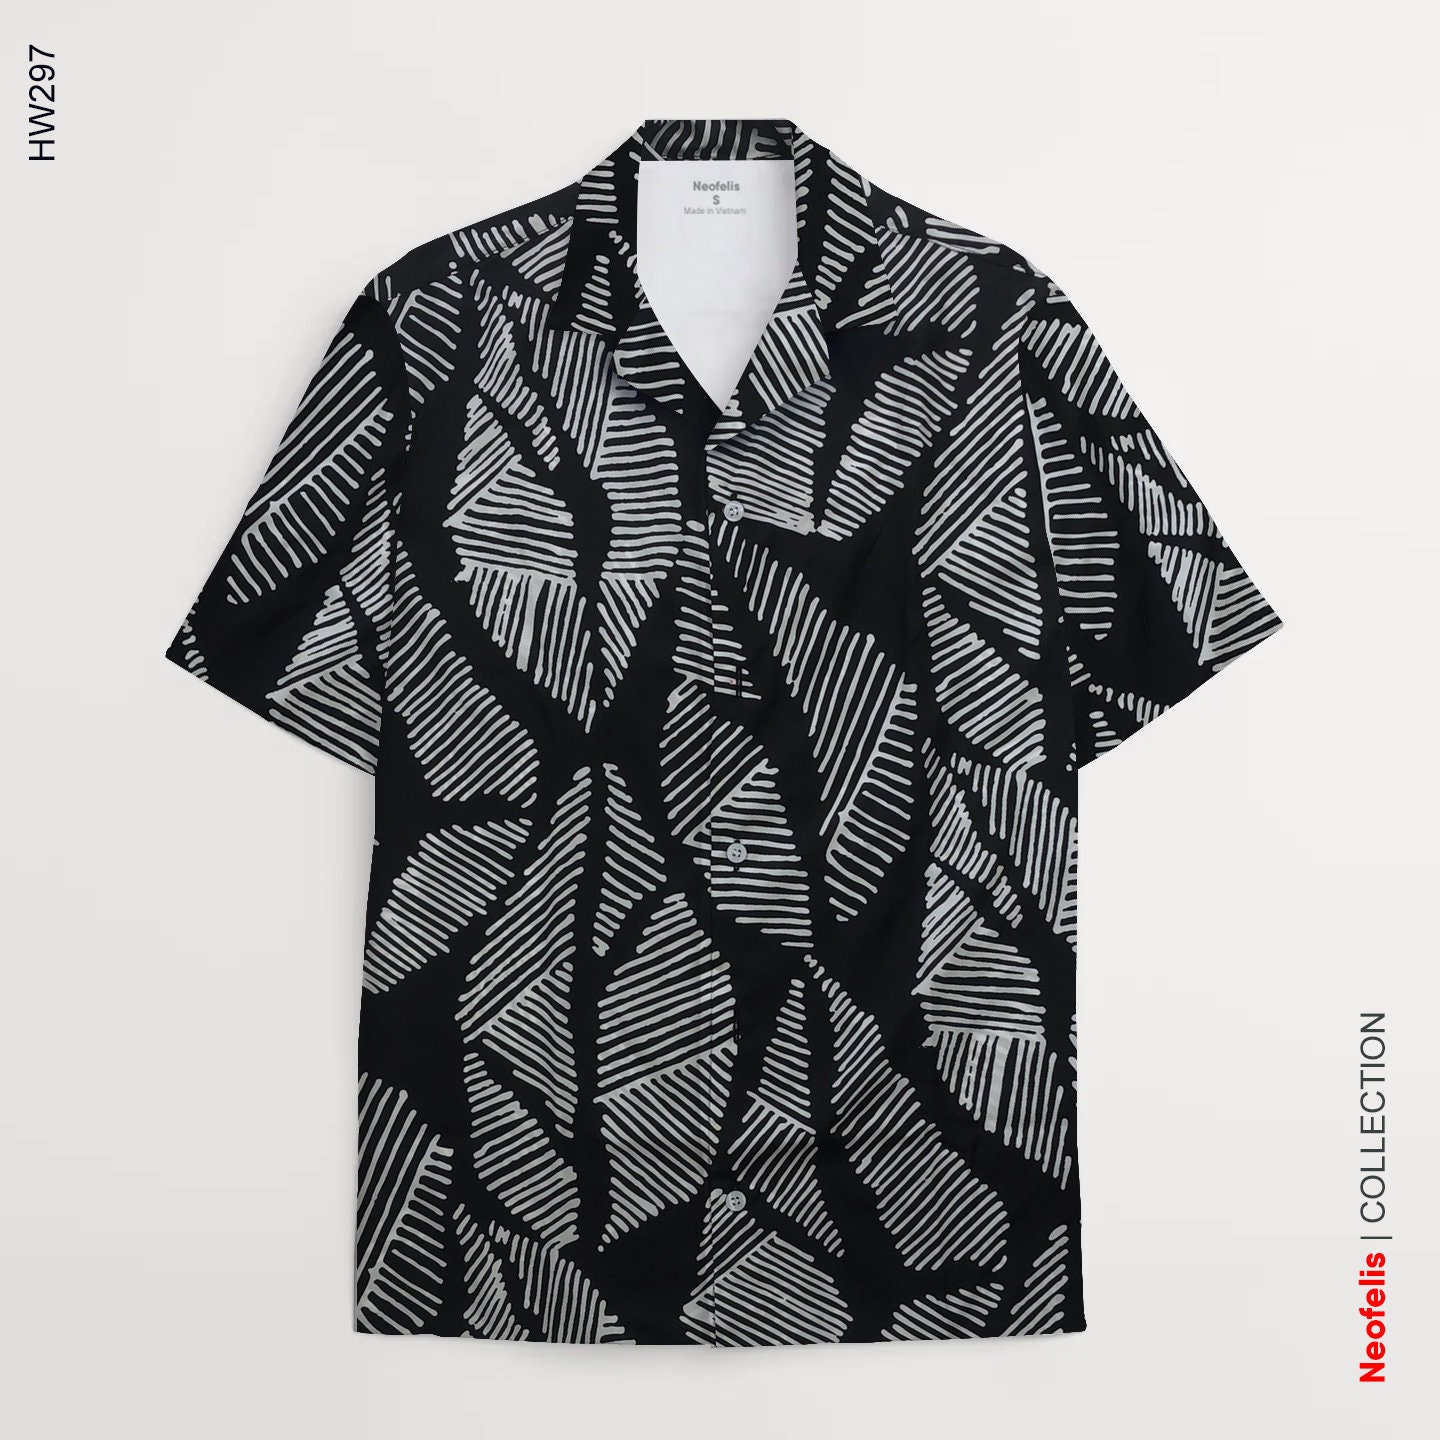 Men's short sleeved black and white patterned shirt | Etsy